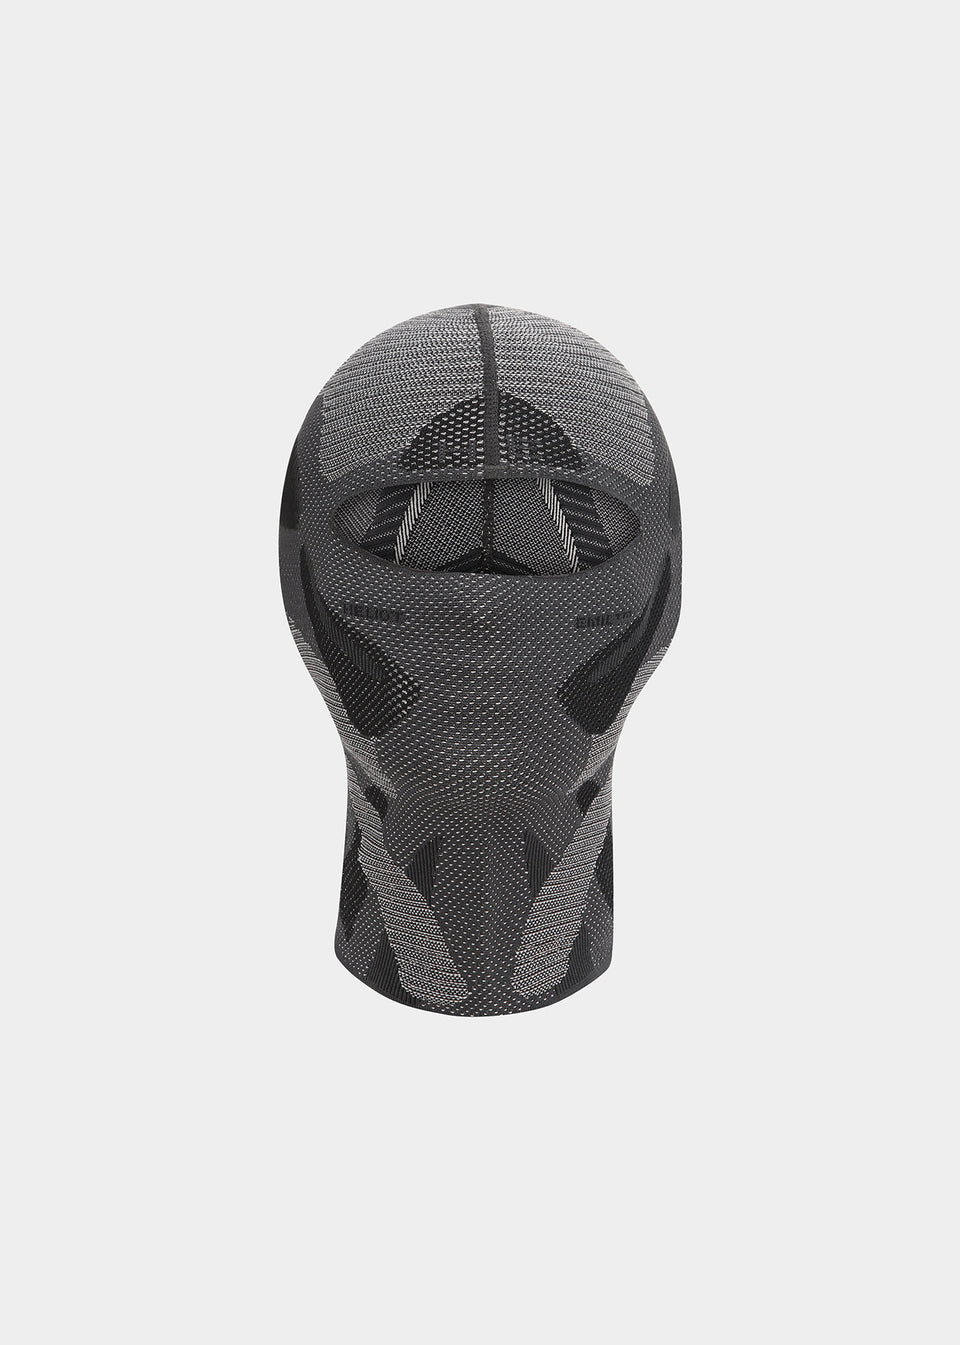 Louis Vuitton releases face shield that doubles as a cap